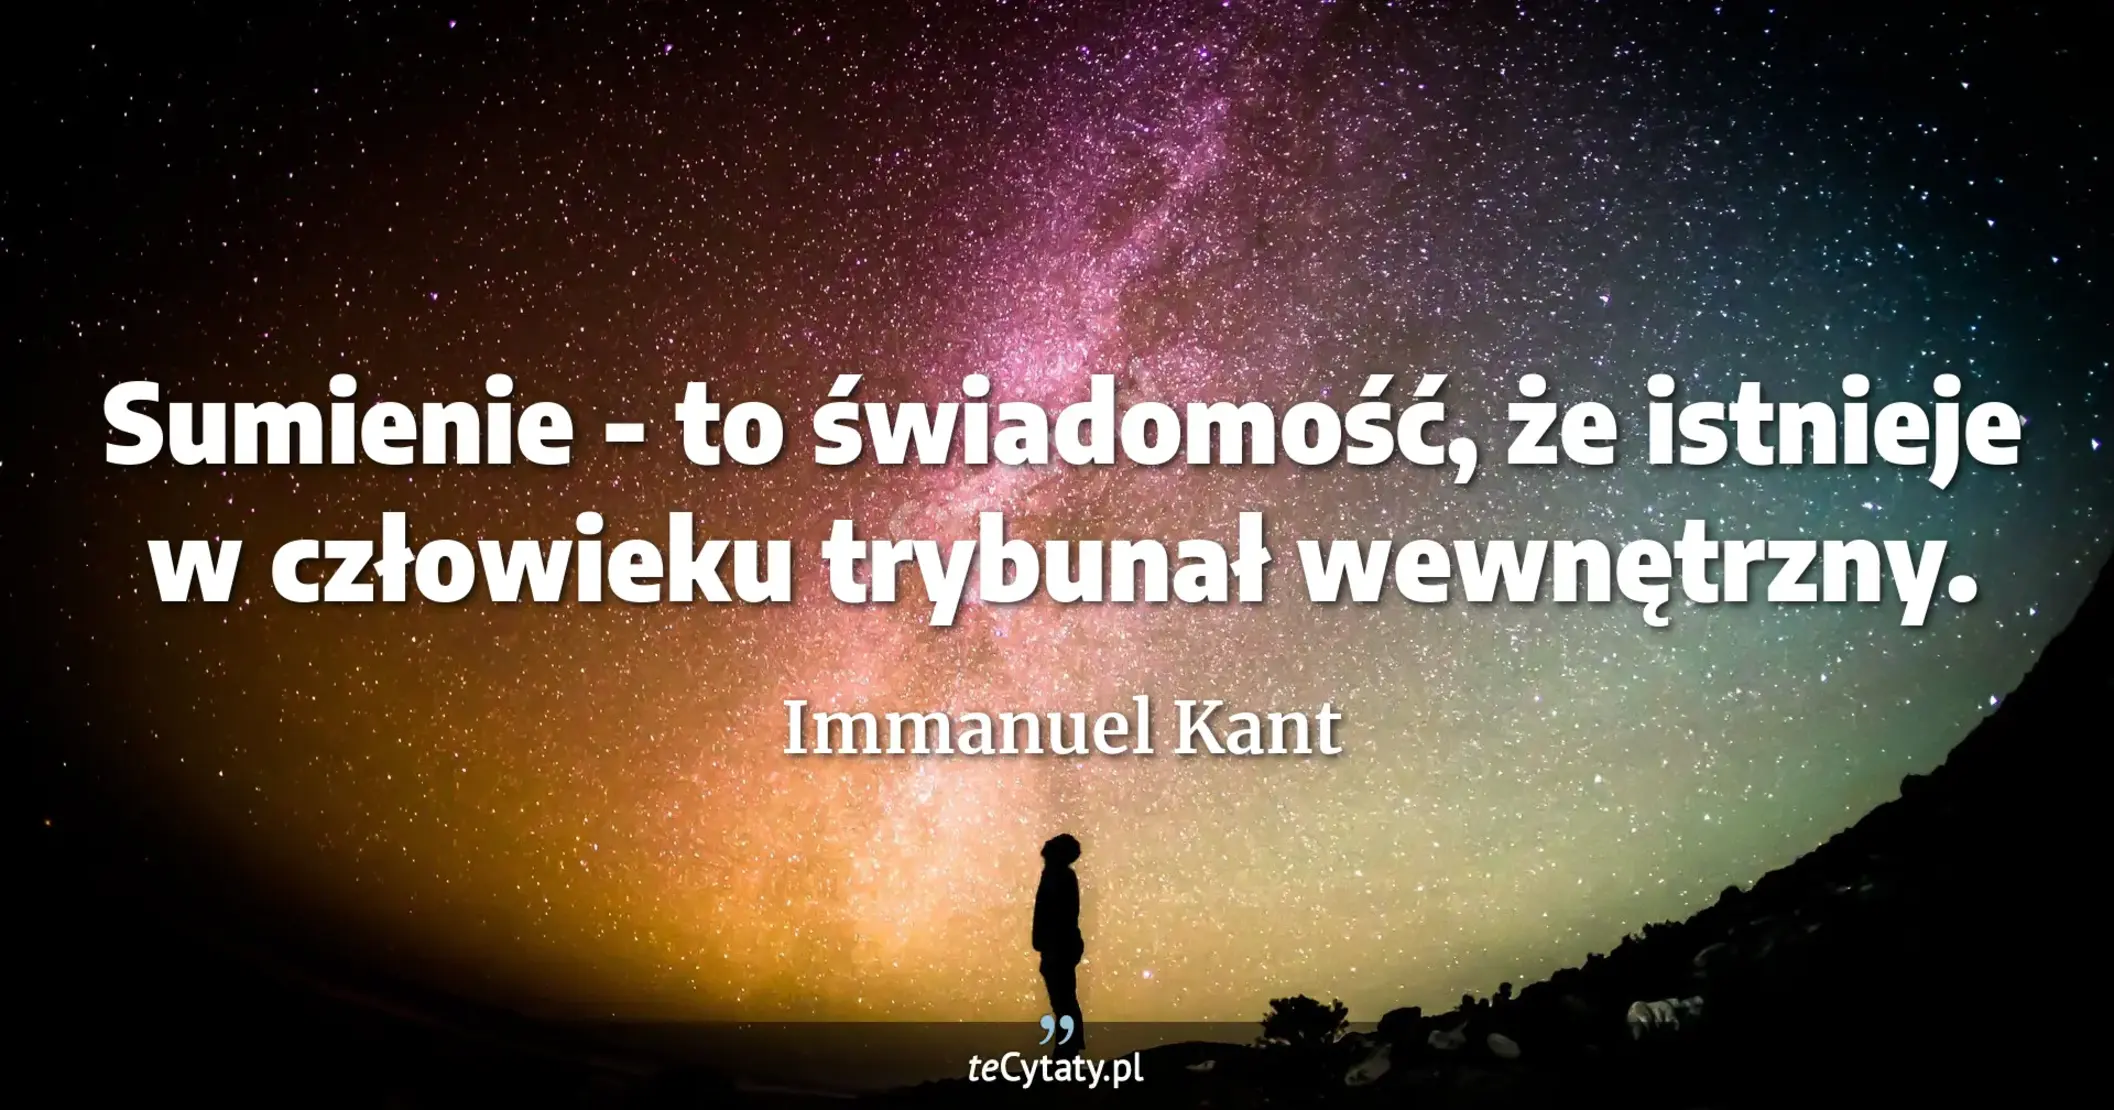 Sumienie - to świadomość, że istnieje w człowieku trybunał wewnętrzny. - Immanuel Kant